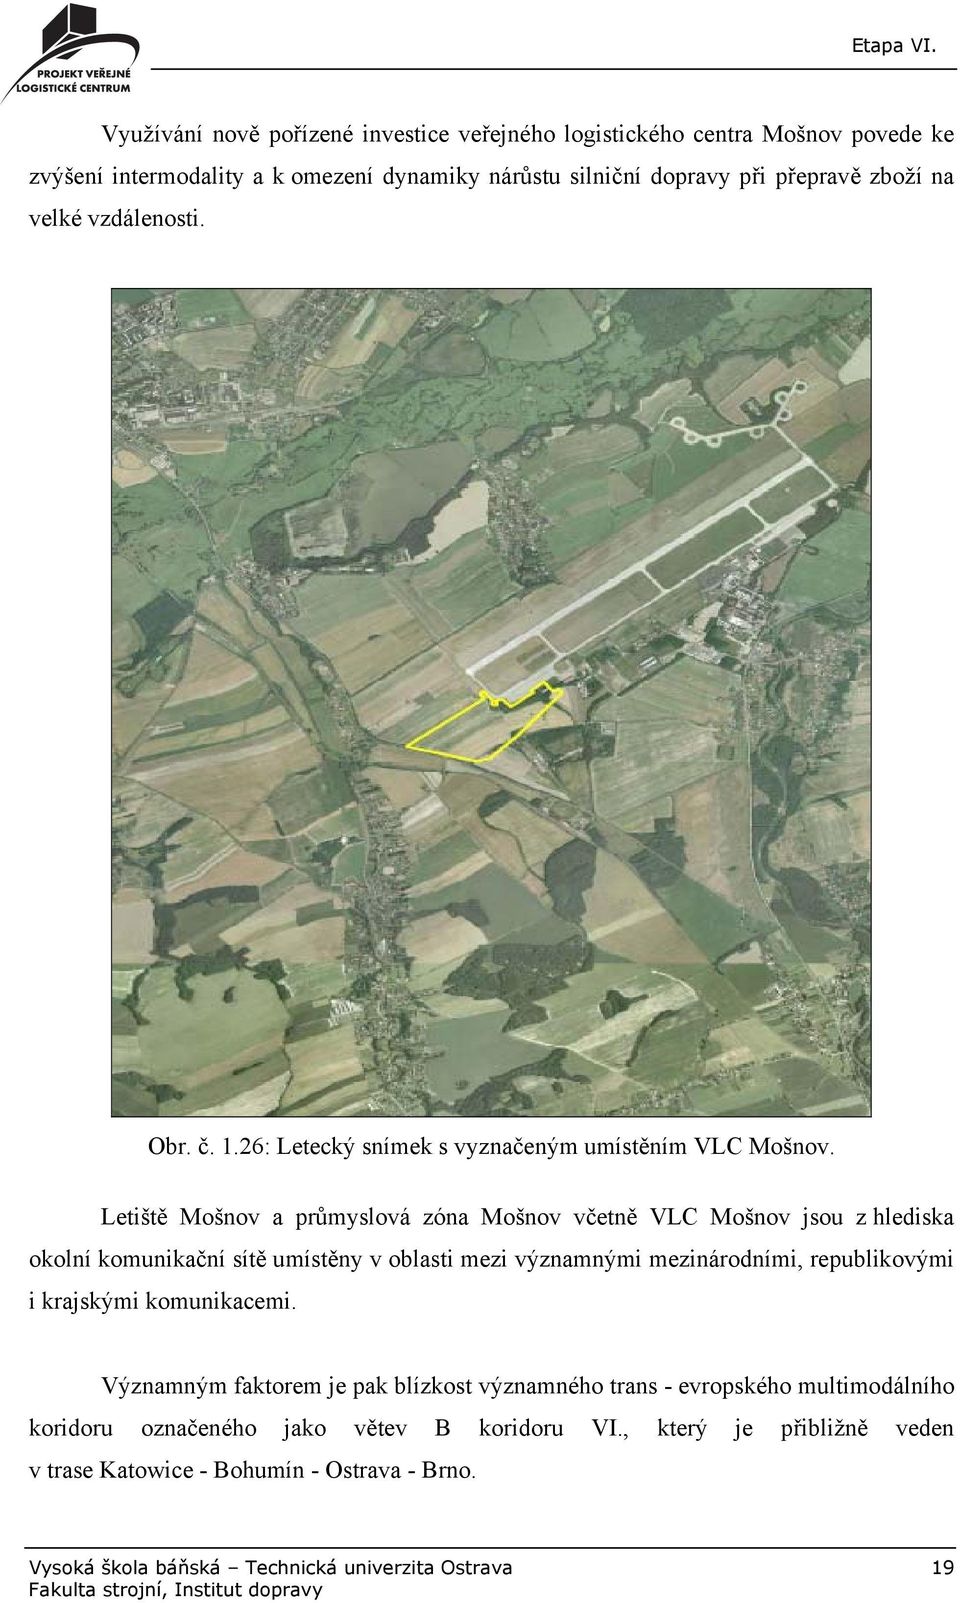 Letiště Mošnov a průmyslová zóna Mošnov včetně VLC Mošnov jsou z hlediska okolní komunikační sítě umístěny v oblasti mezi významnými mezinárodními, republikovými i